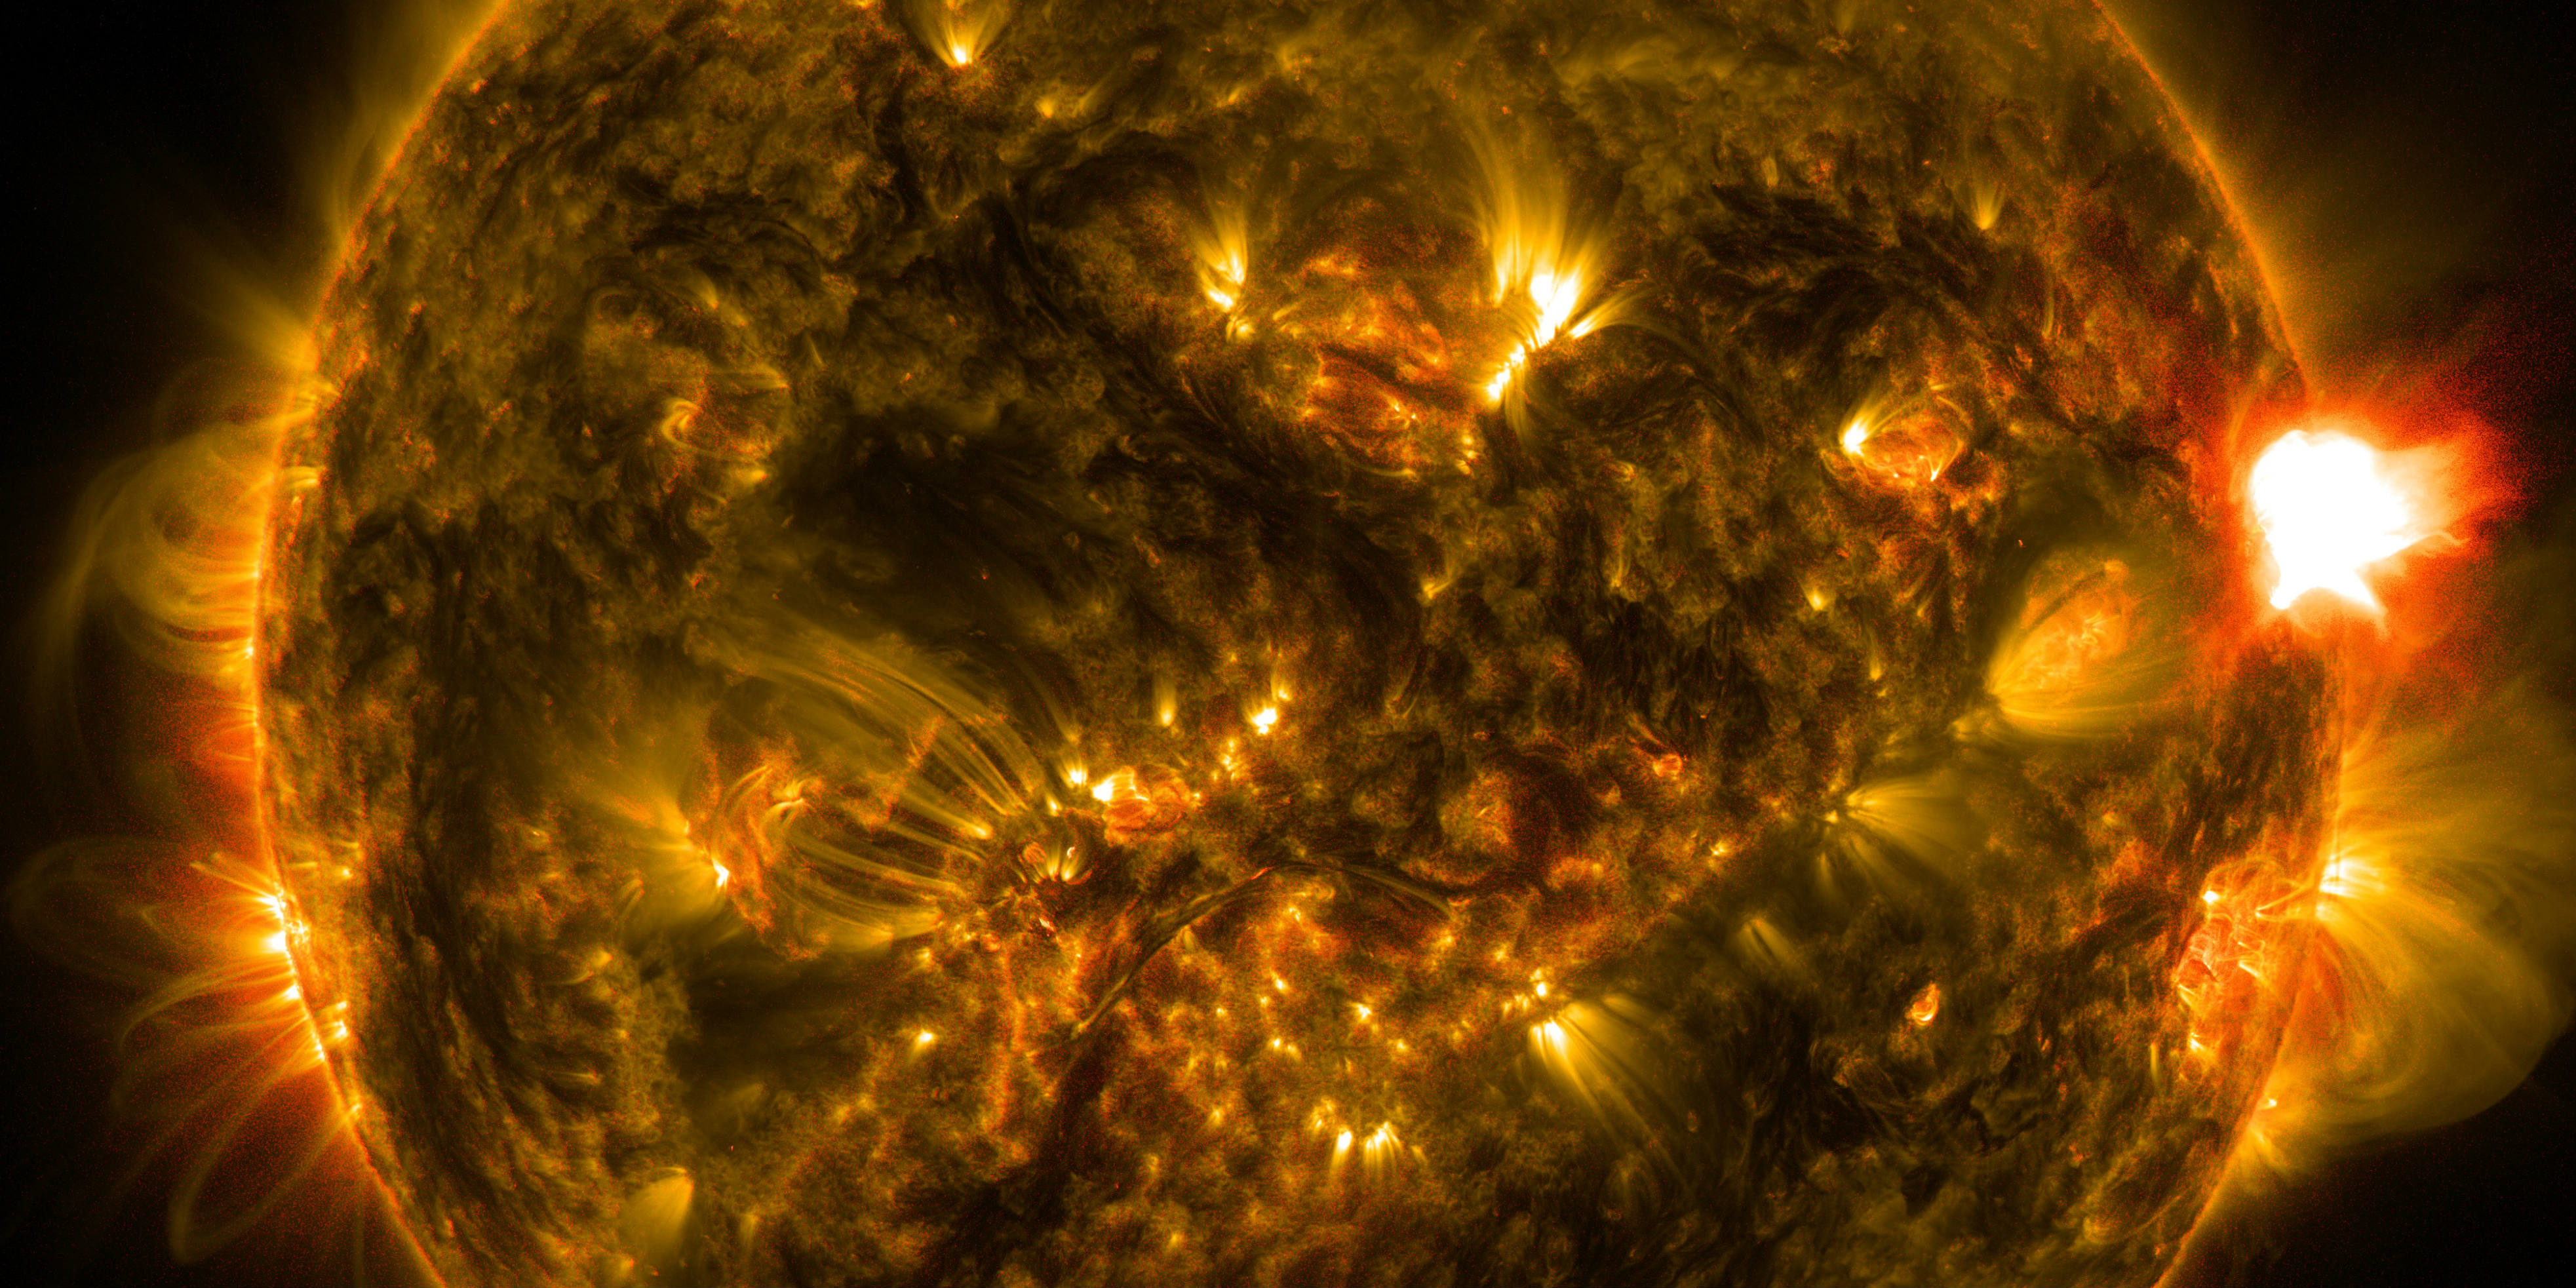 First Notable Solar Flare of 2015 - NASA/SDO